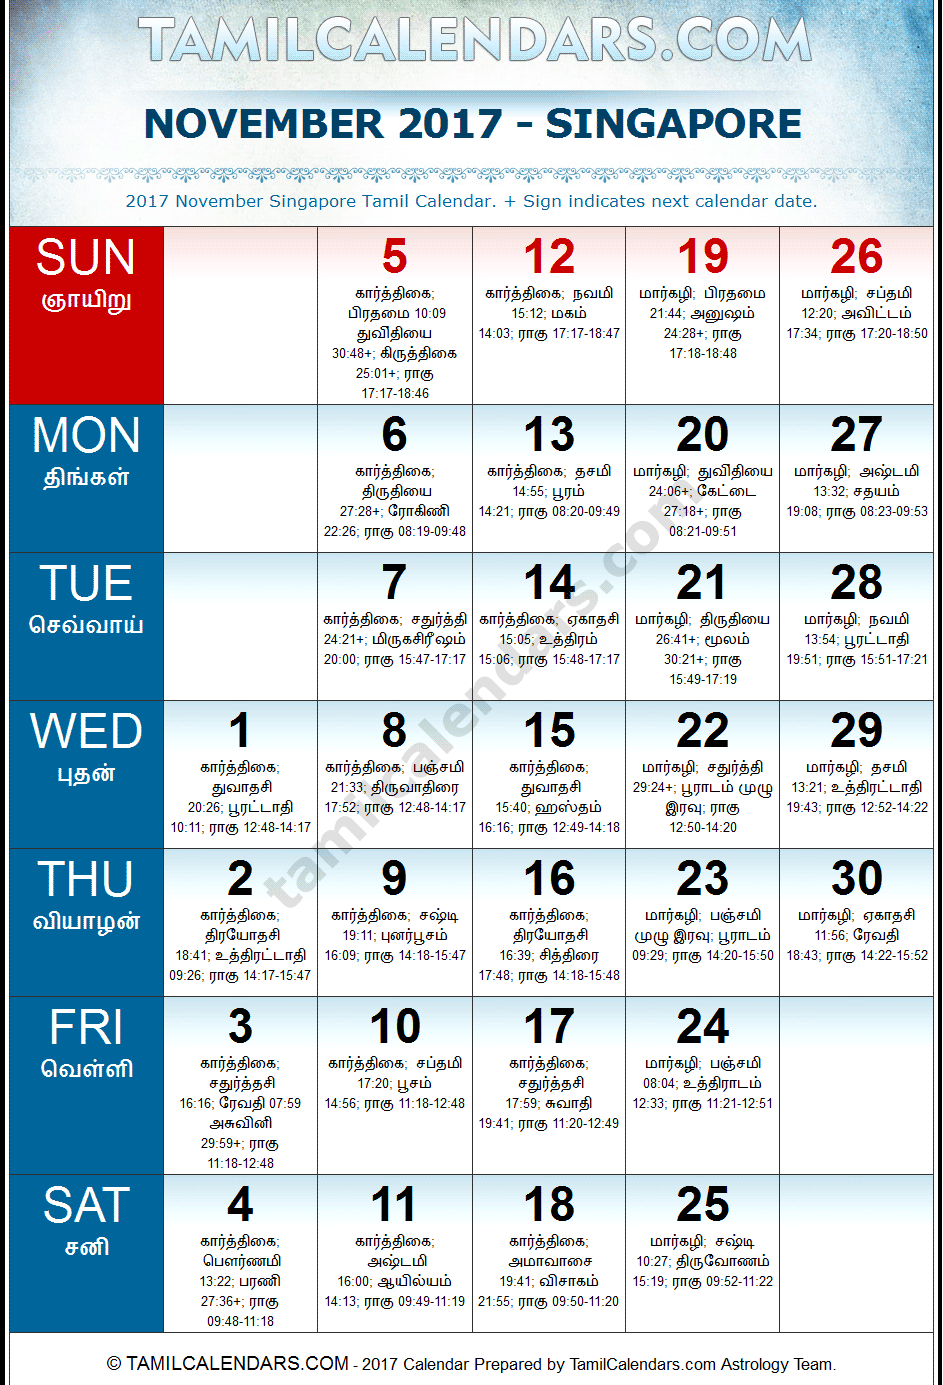 November 2017 Tamil Calendar for Singapore